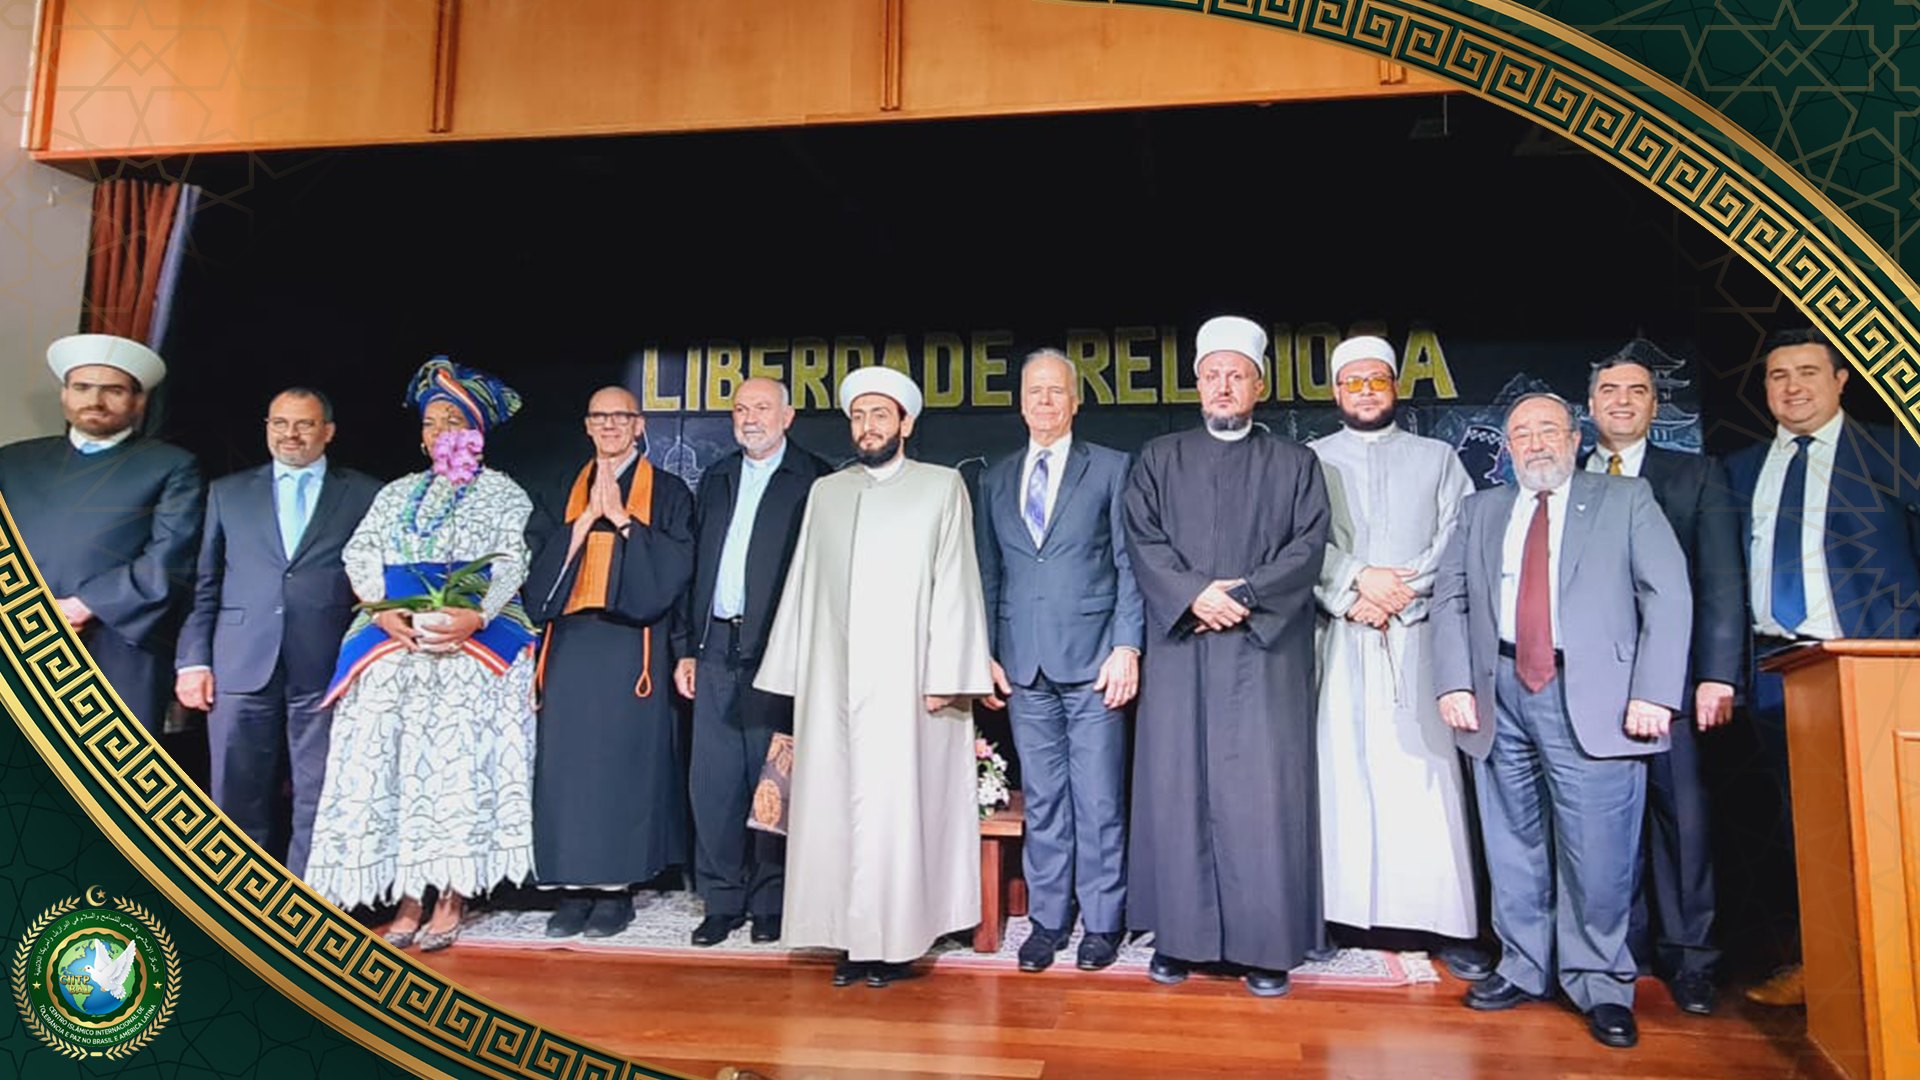 قادة الأديان في البرازيل في مؤتمر "الحرية الدينية" في ساوباولو